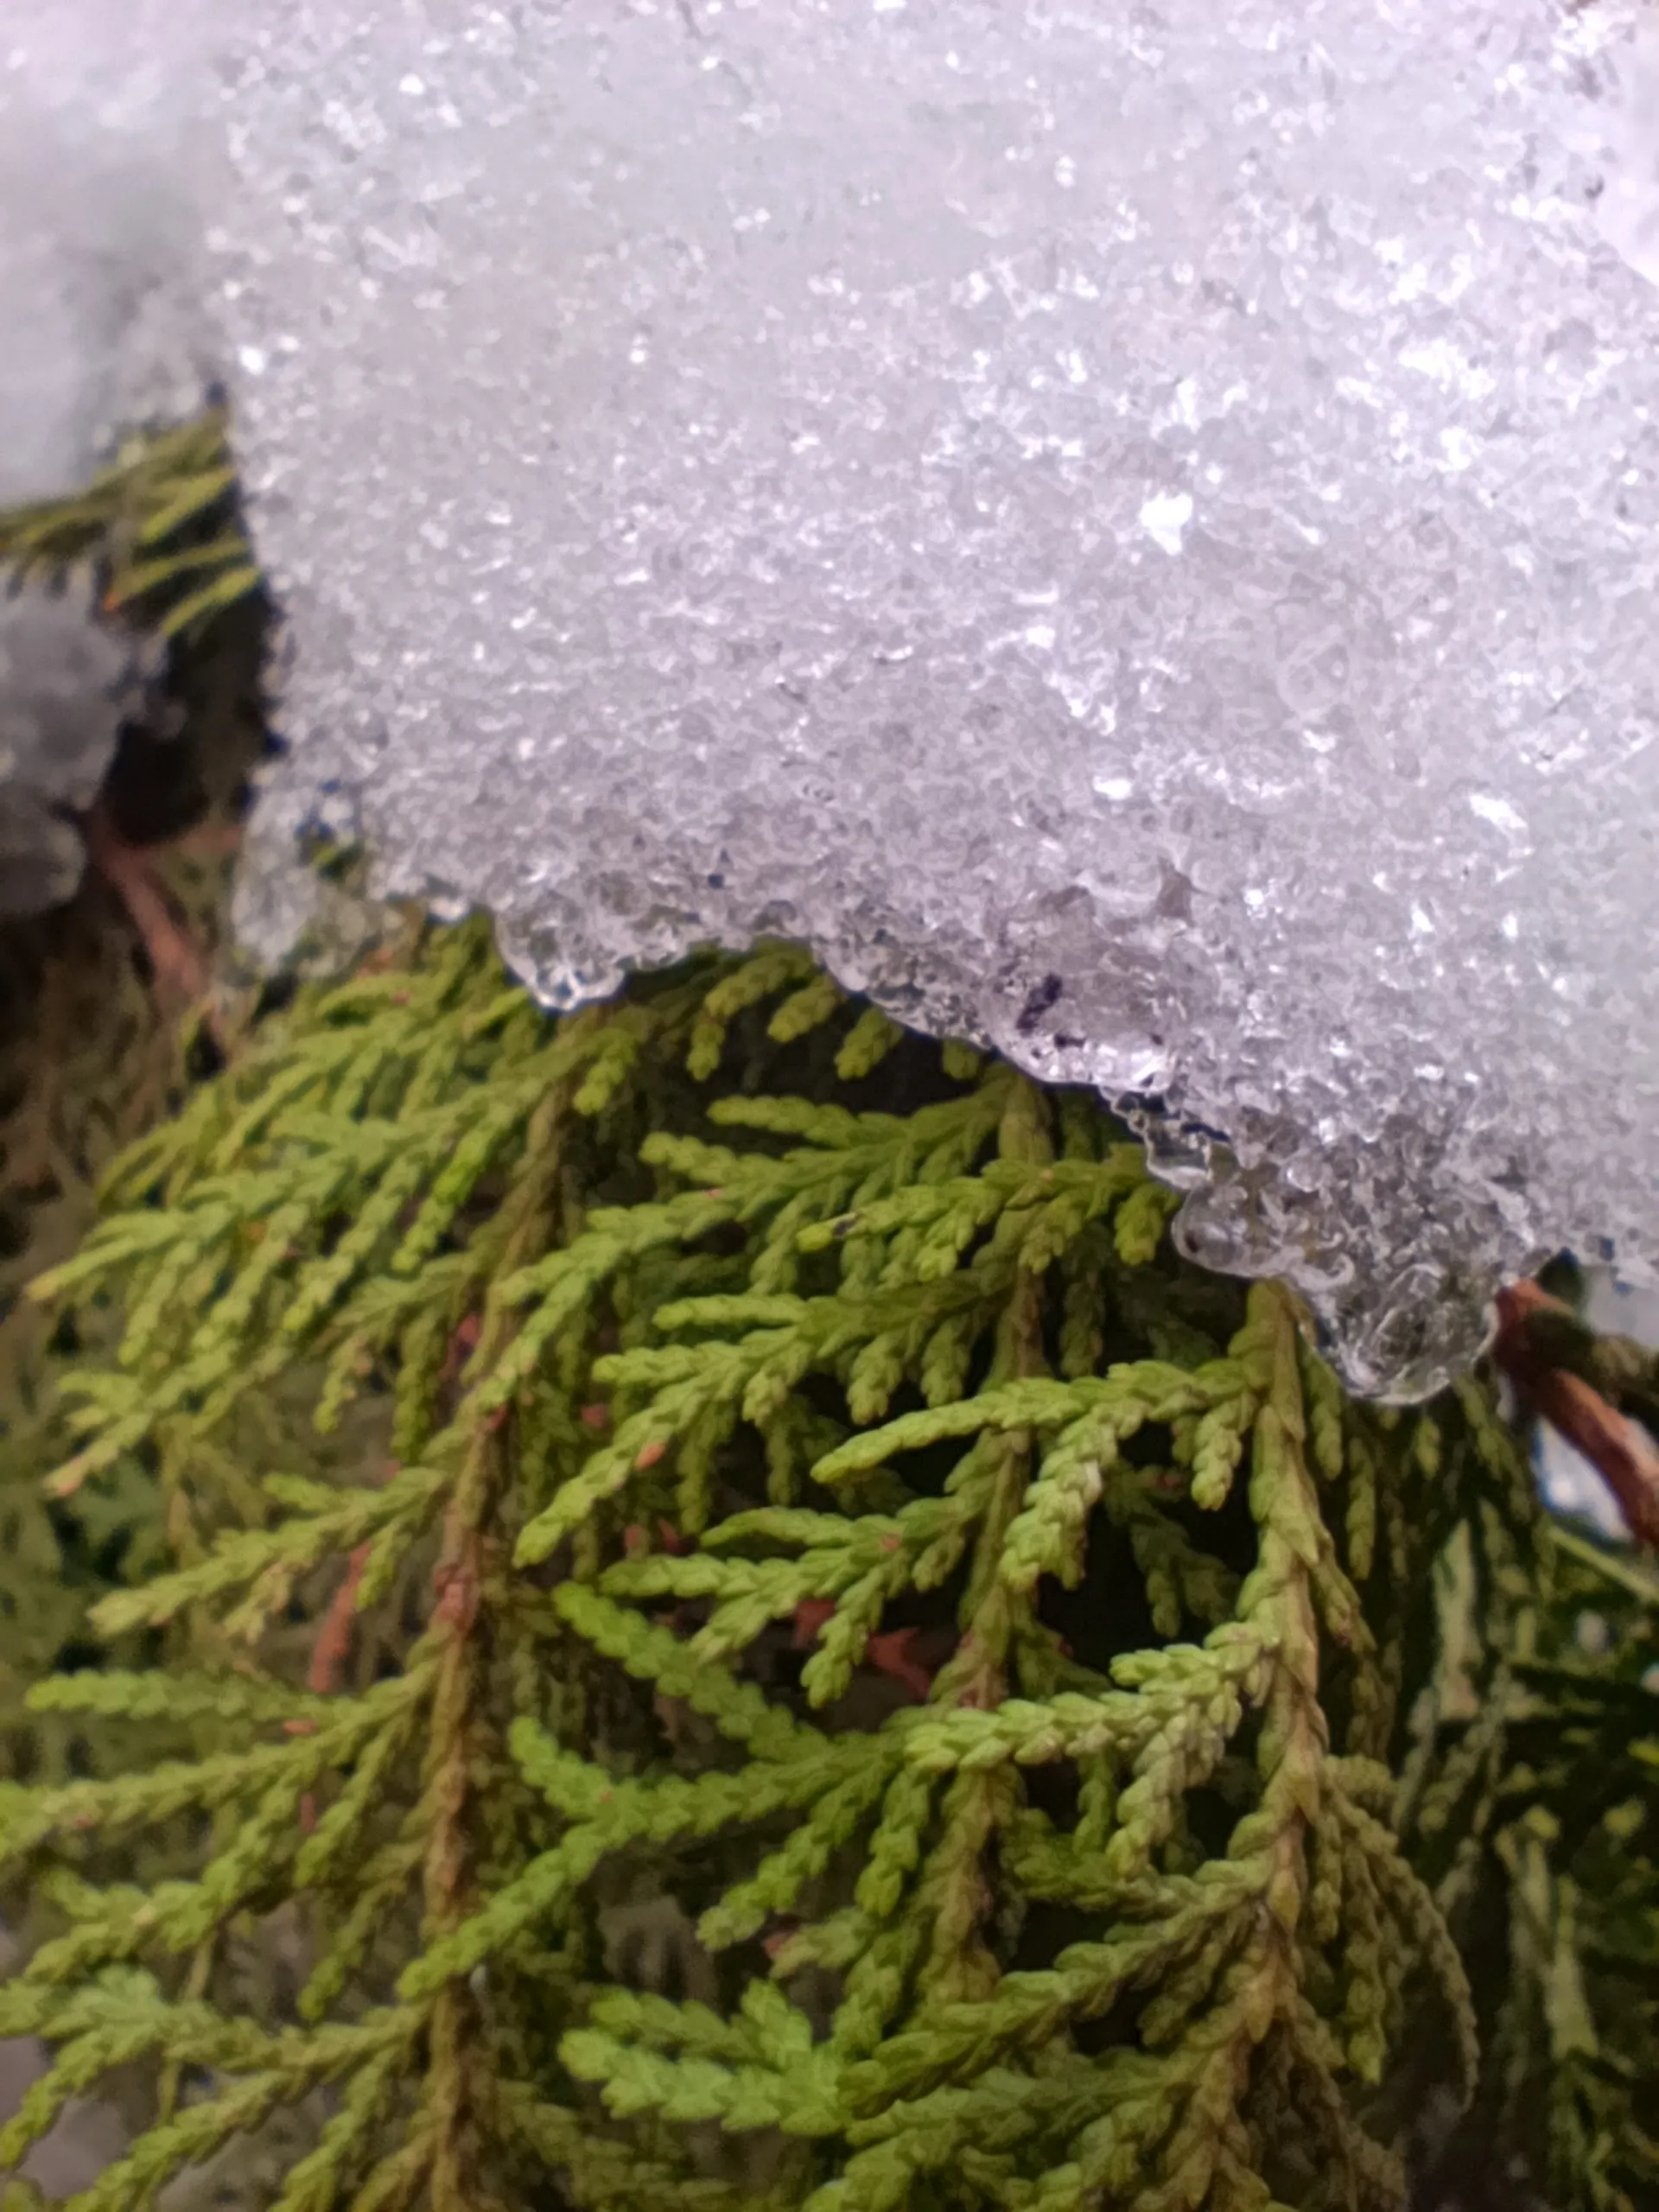 نمونه عکس ردمی نوت ۱۳ پرو 4G در حالت ماکرو از برگ های یک گل زیر برف